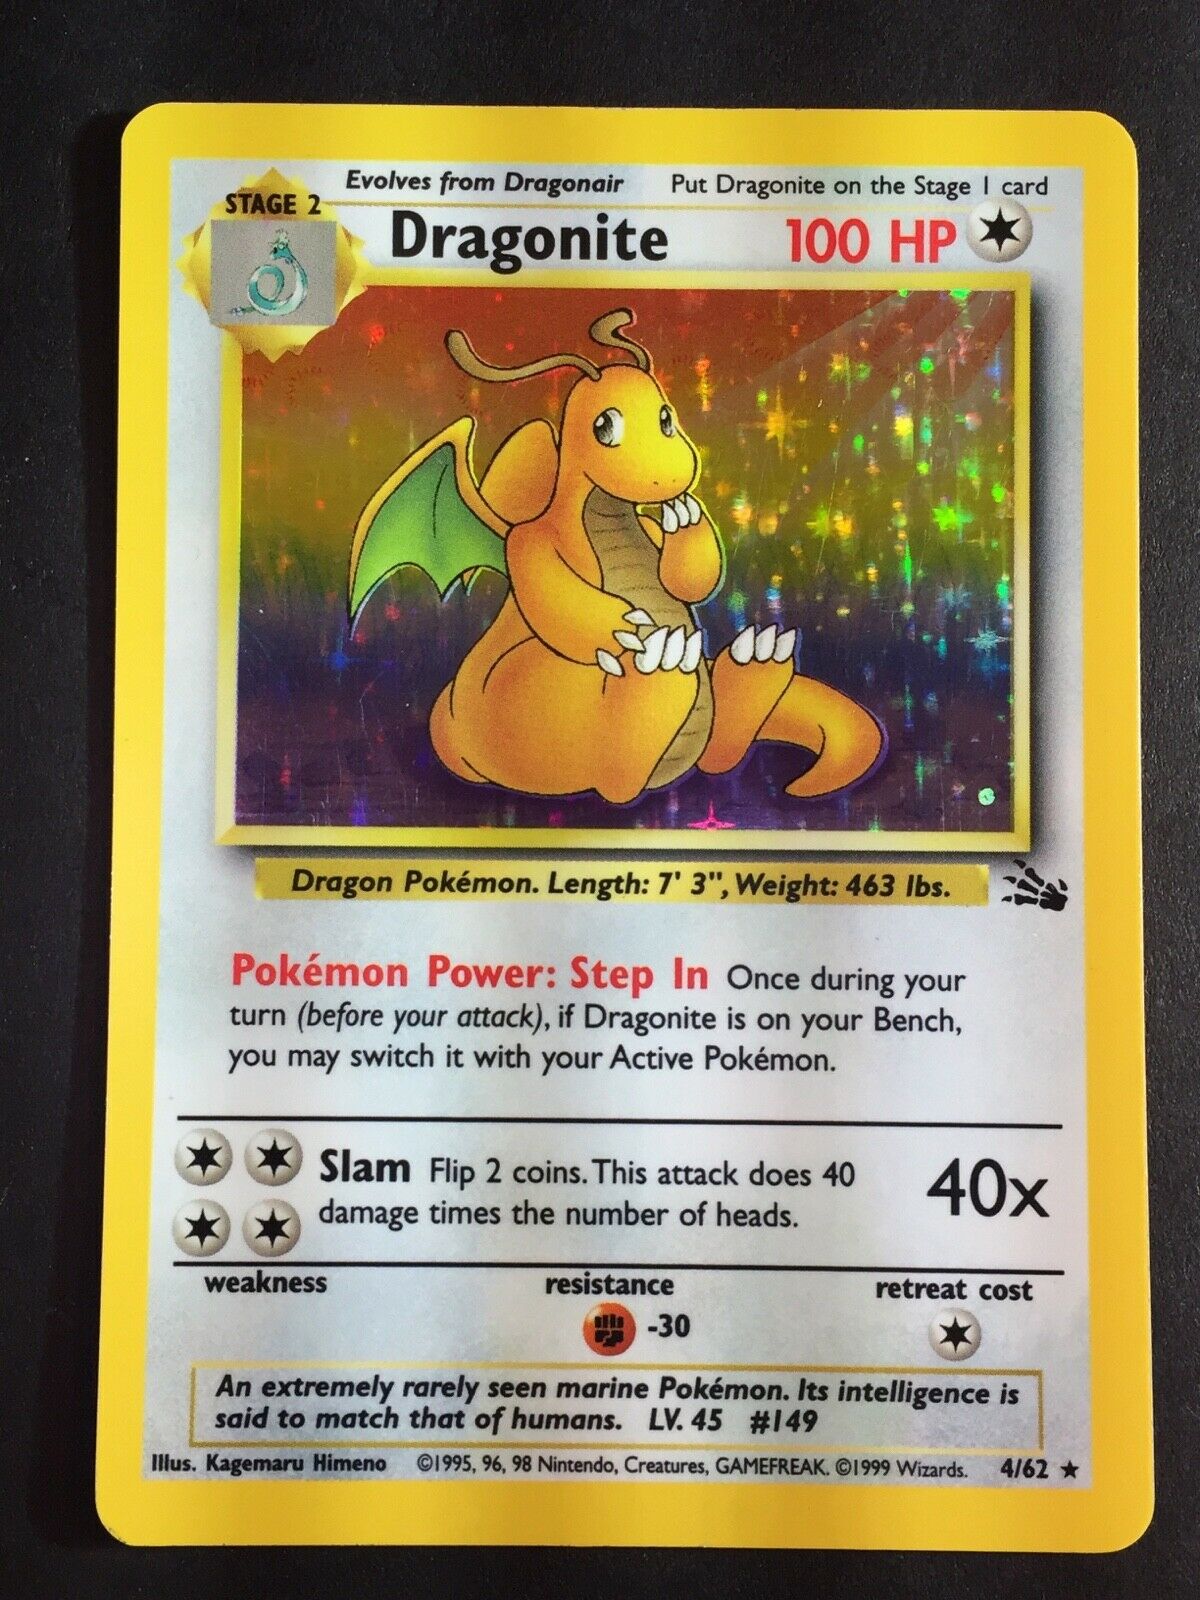 Dragonite Pokemon Card 1995 - 1200x1600 Wallpaper 